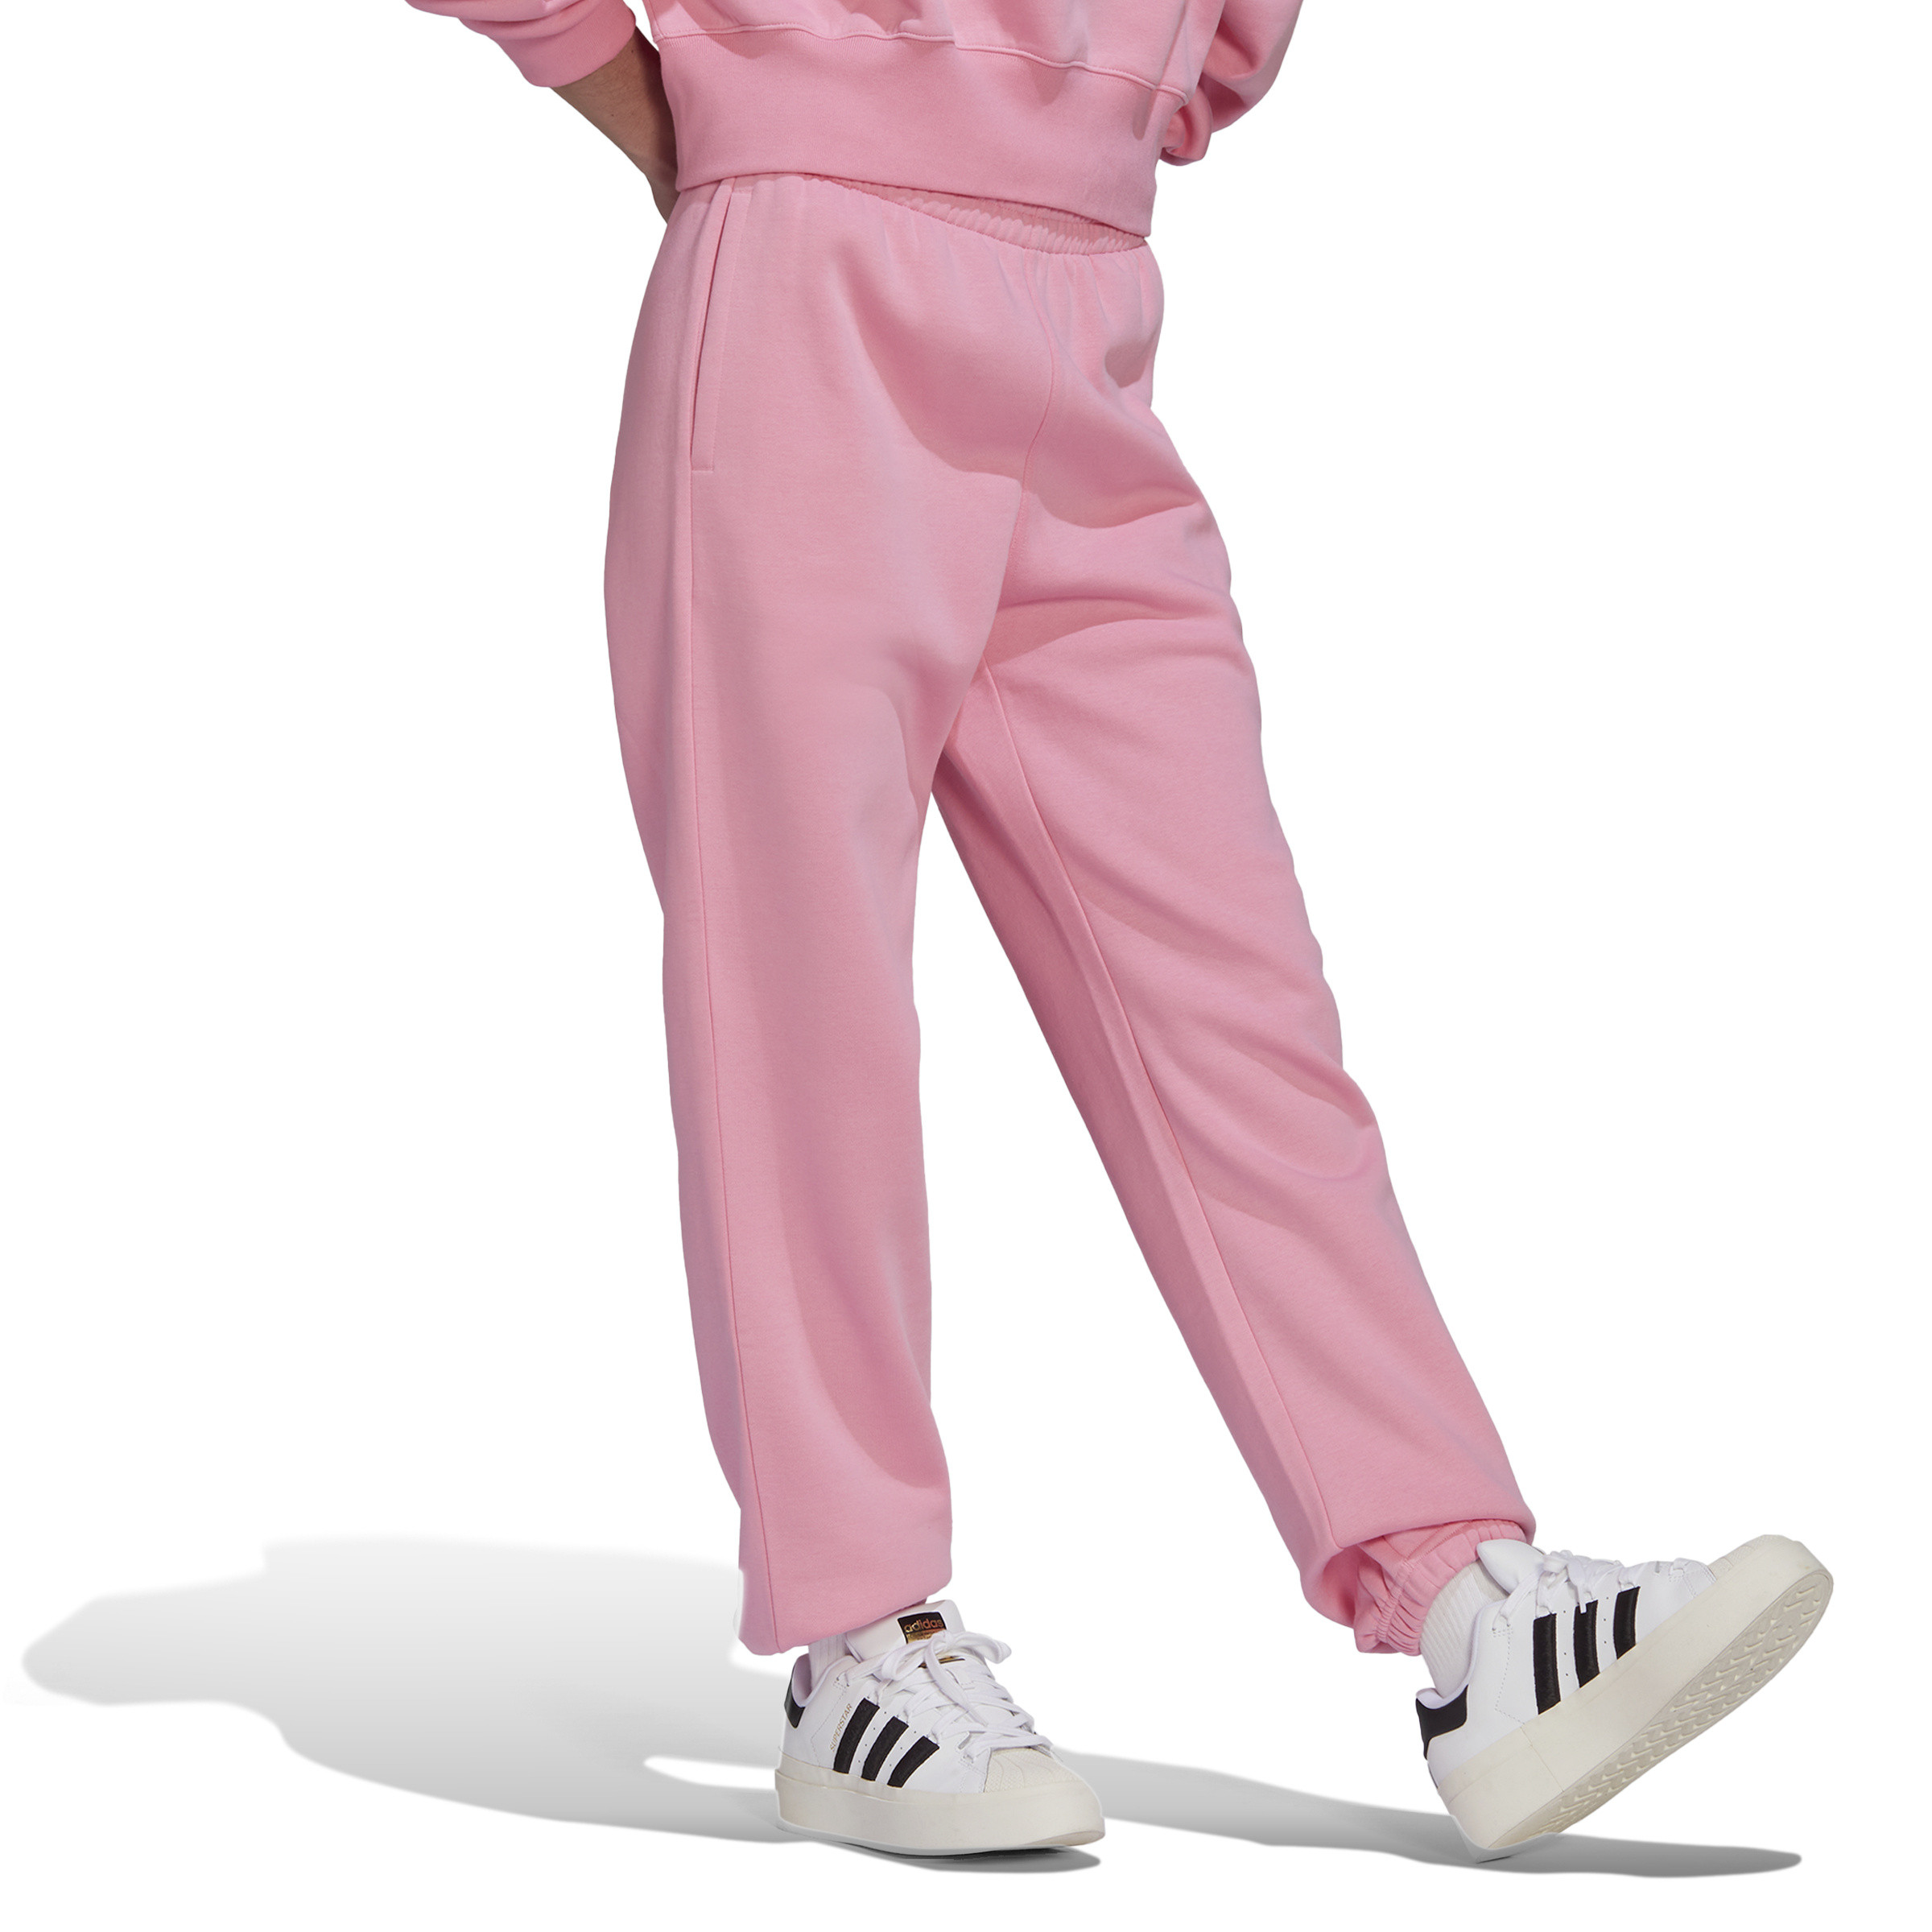 Adidas - Pantaloni adicolor essentials fleece joggers, Rosa, large image number 4